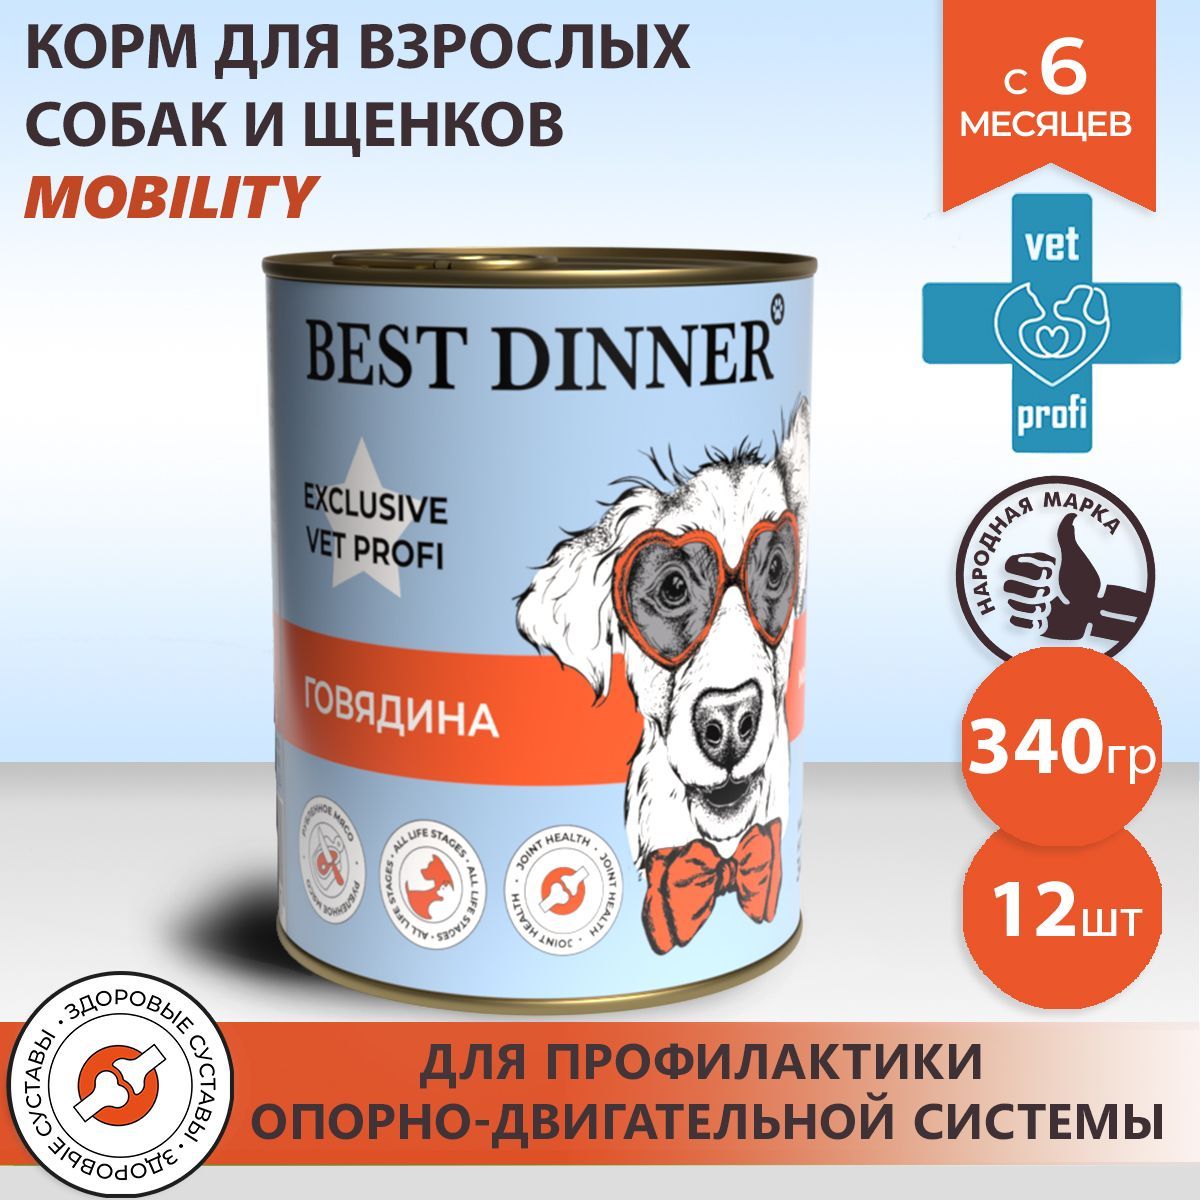 Корм бест для собак отзывы. Профи фит корм для собак. Best dinner Mobility говядина. Best dinner Exclusive vet Profi Mobility "говядина" - 0,1 кг.